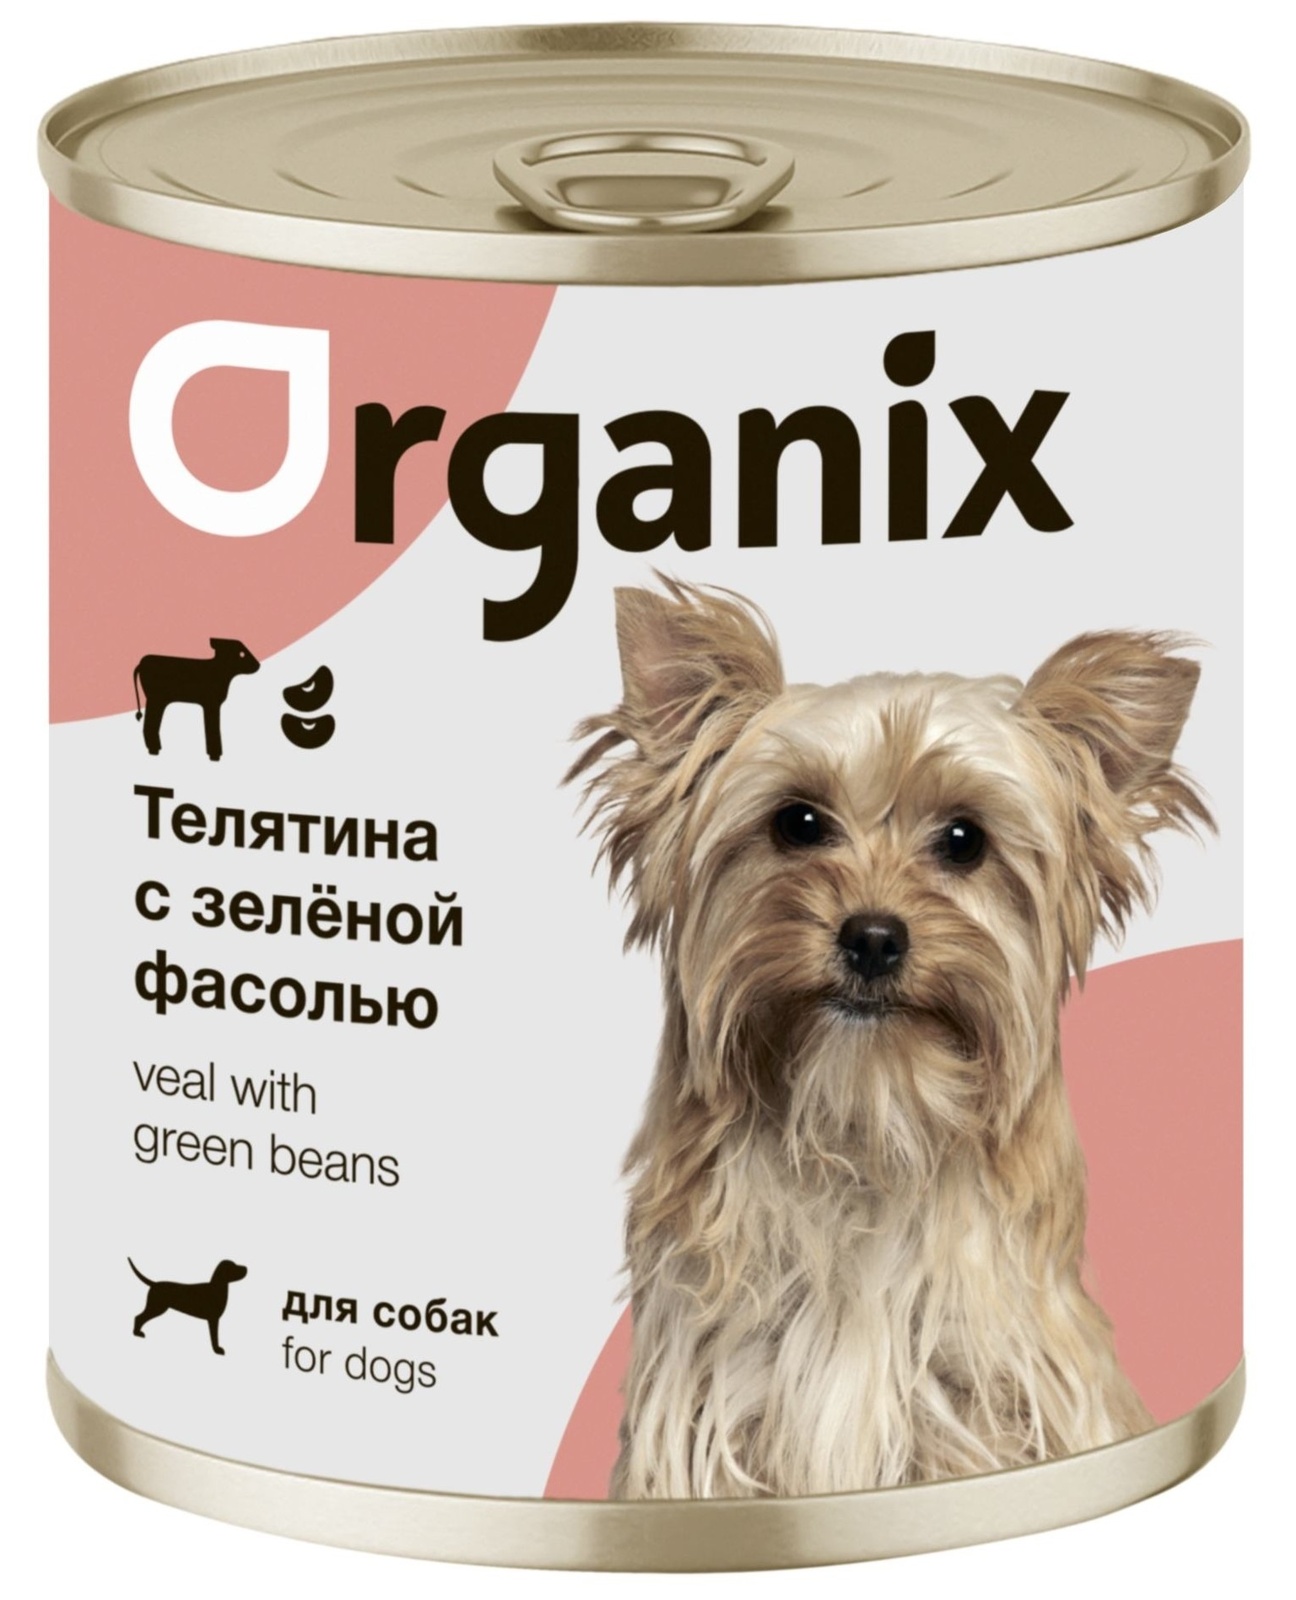 Organix консервы Organix консервы для собак Телятина с зеленой фасолью (750 г) organix консервы organix консервы для собак индейка с сердечками и шпинатом 750 г